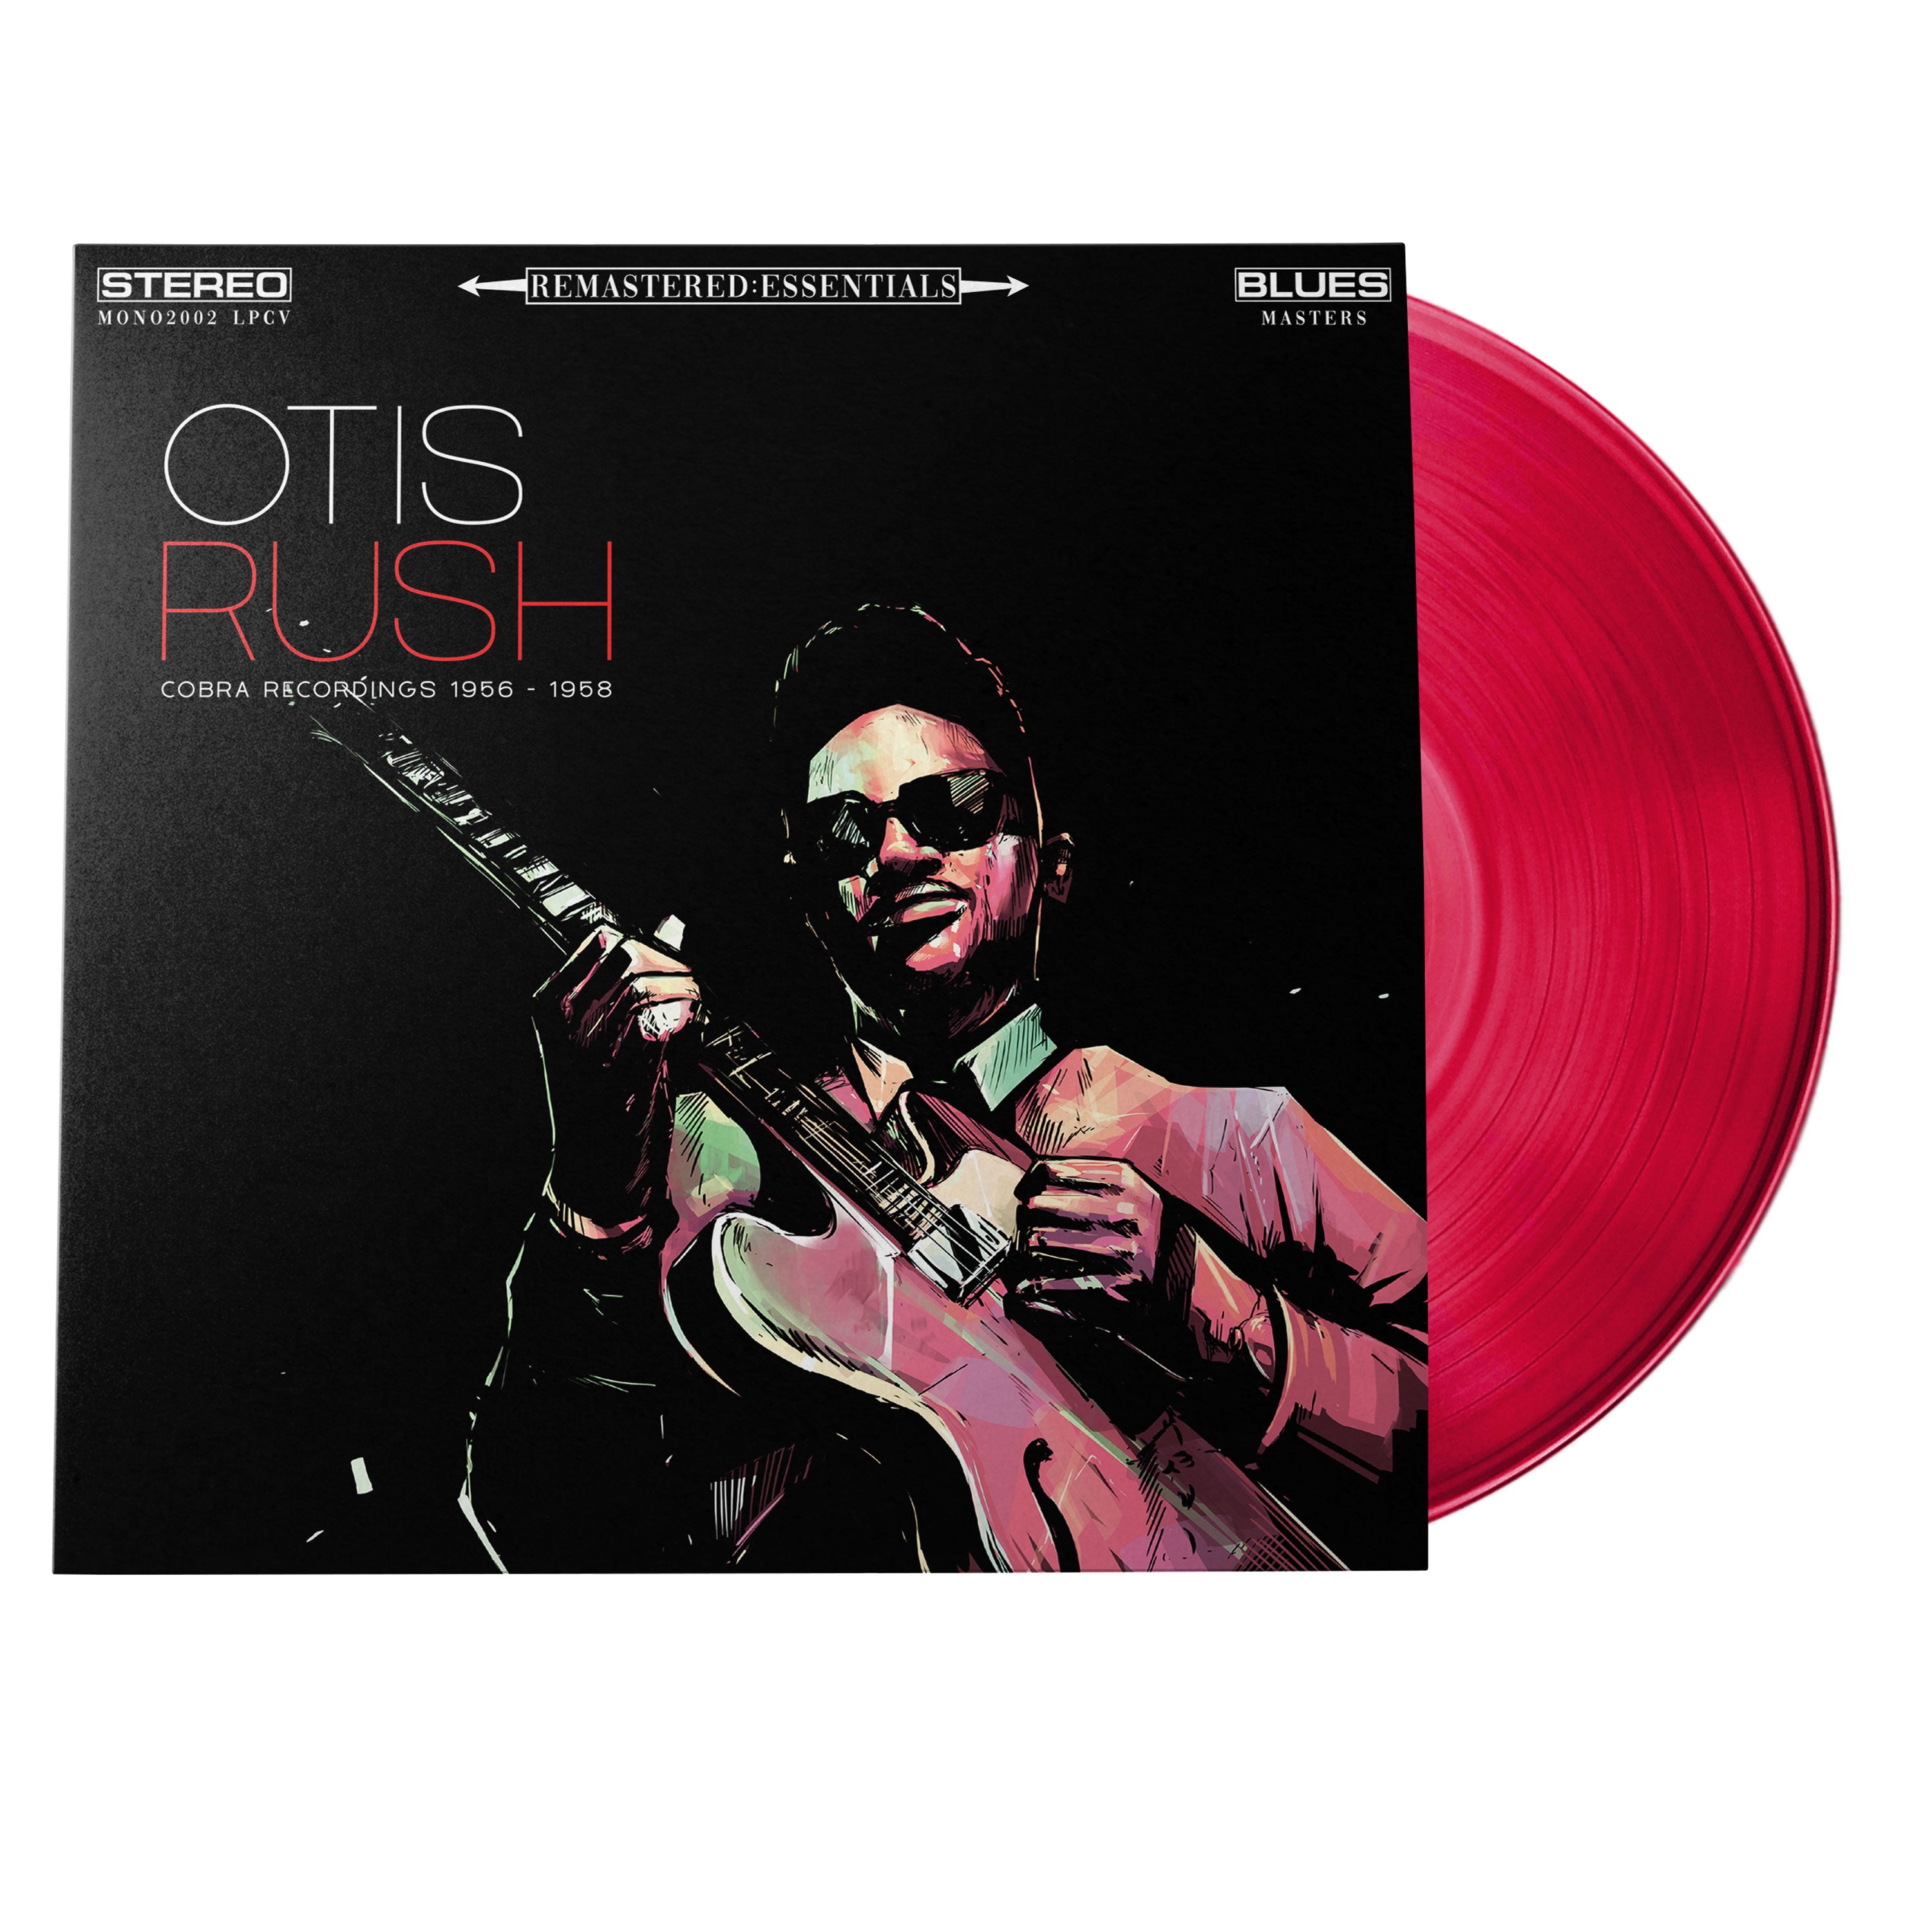 Otis Rush | Remastered:Essentials (Exclusive | Limited Edition | 180 Gram Translucent Red Vinyl) | Vinyl